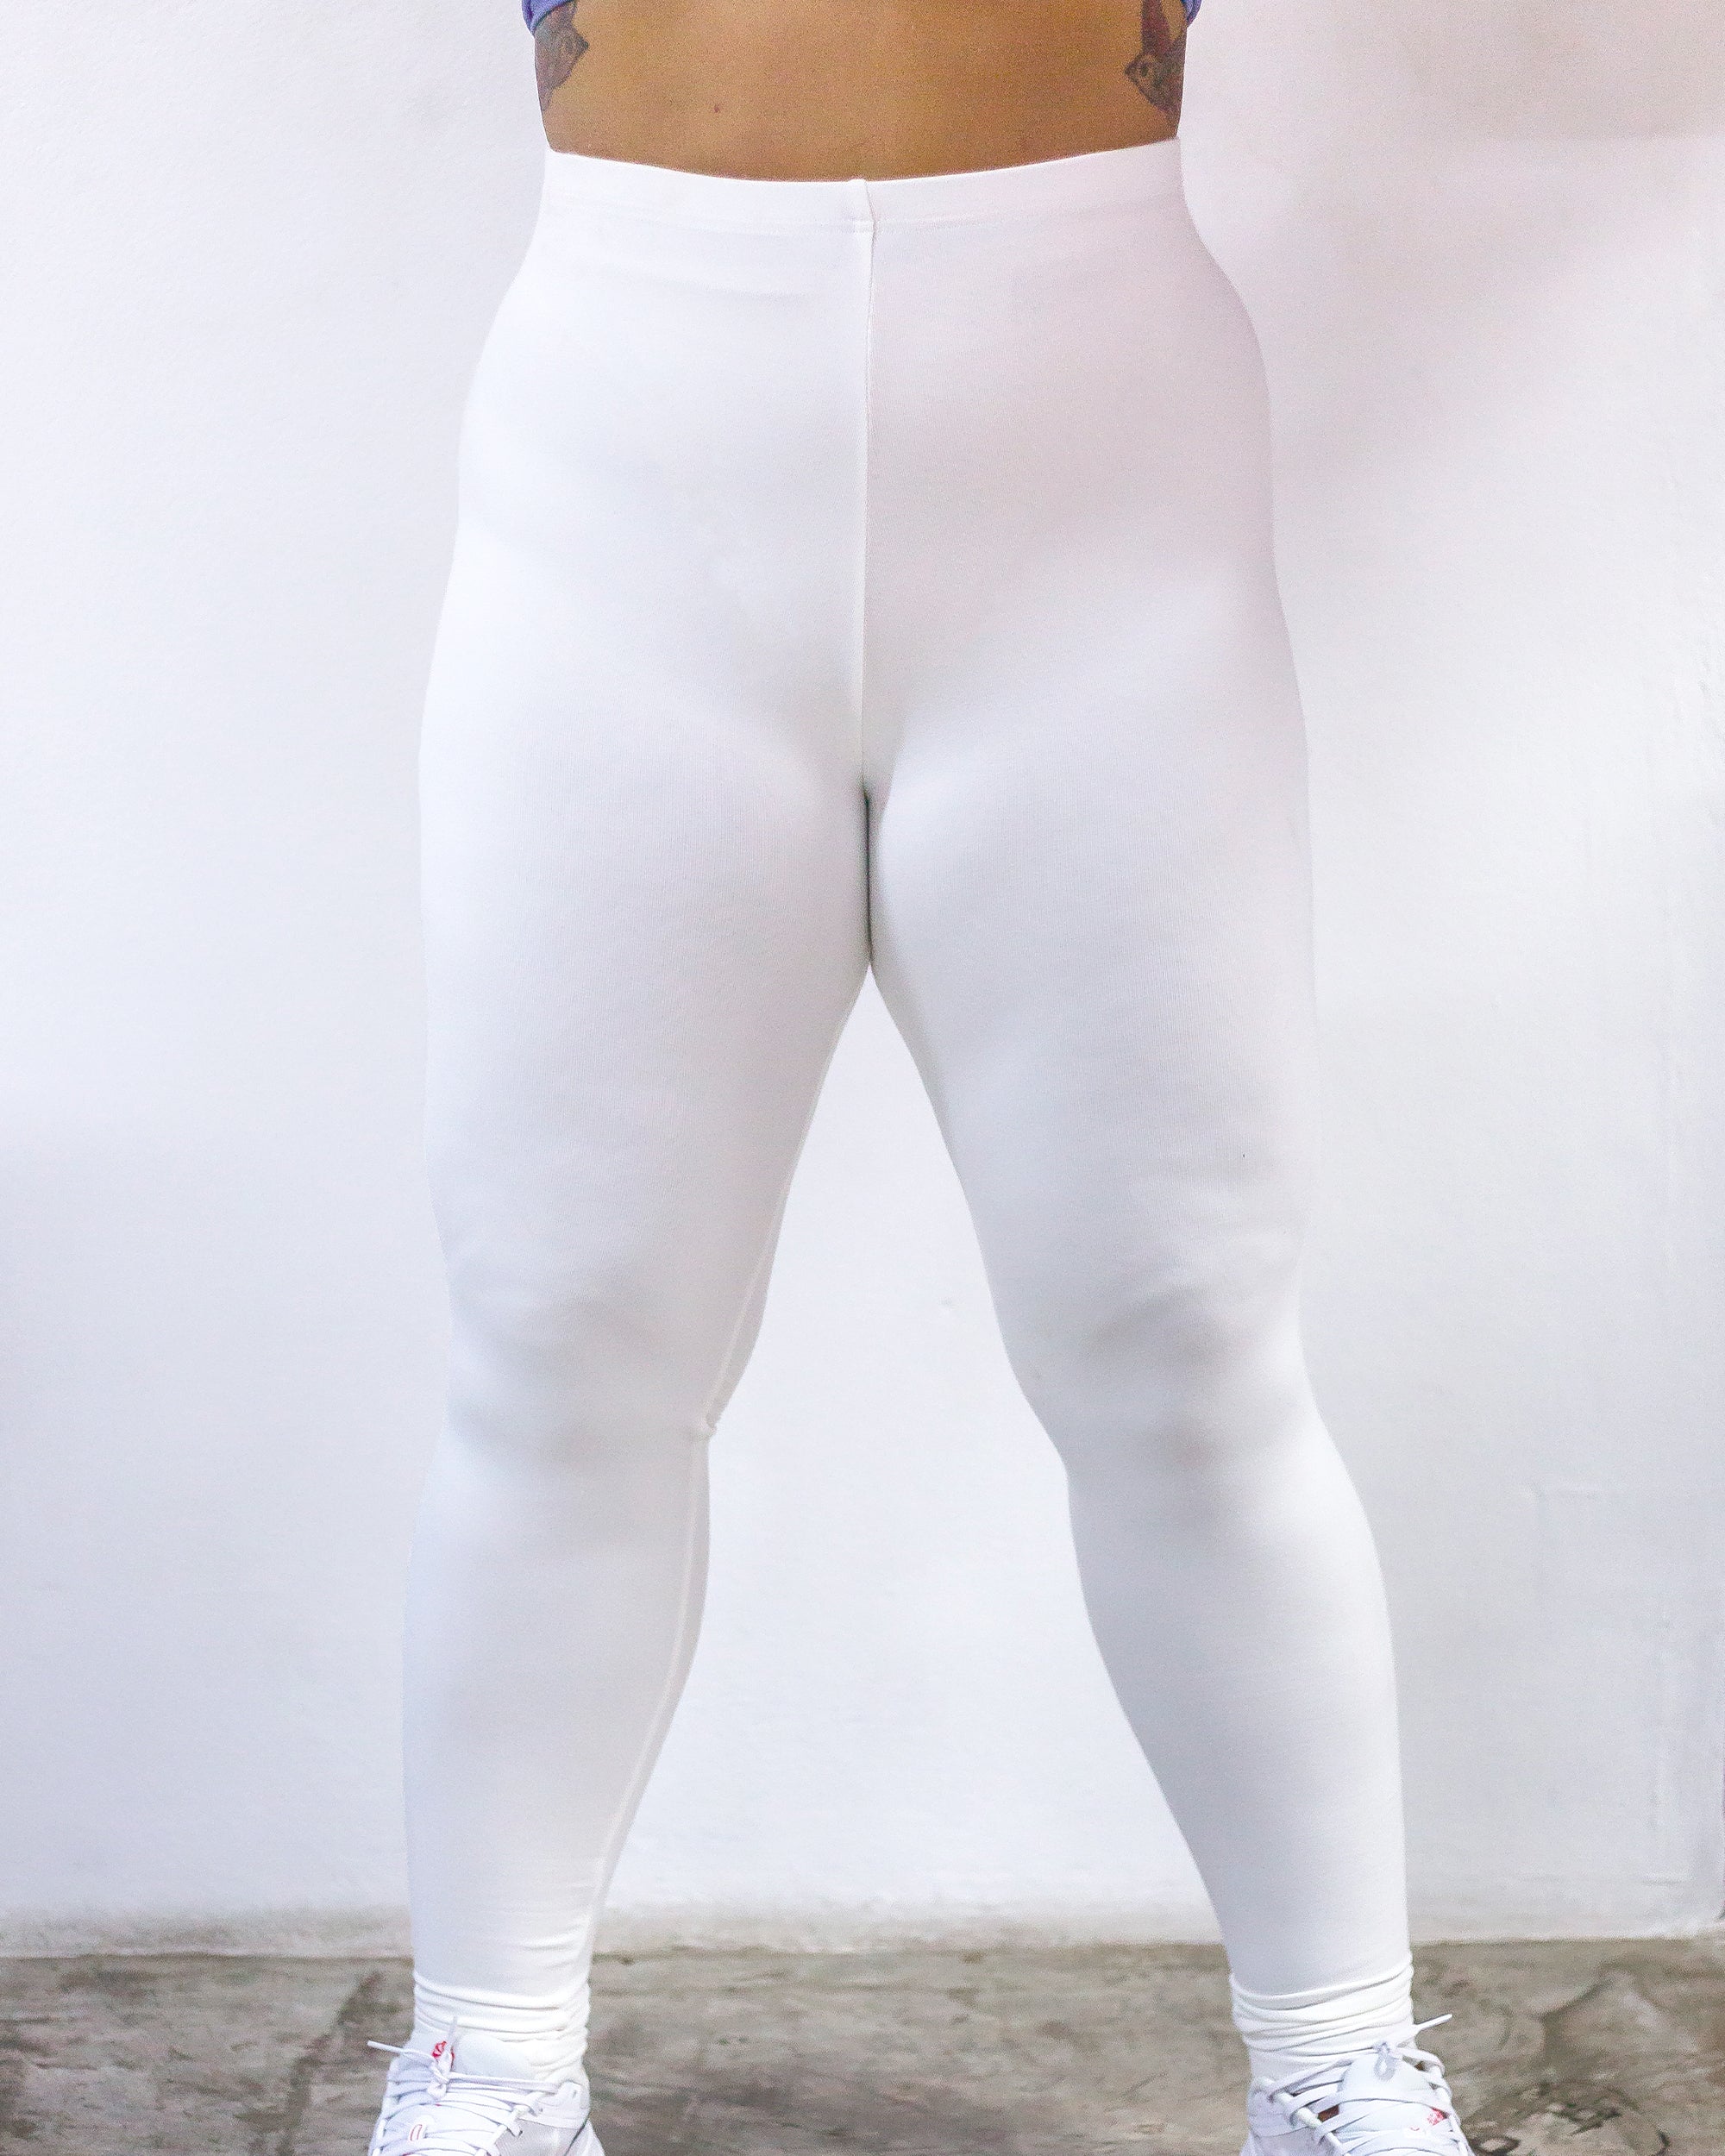 Plus Size Solid Color Cotton Leggings in Blue – Harem Pants